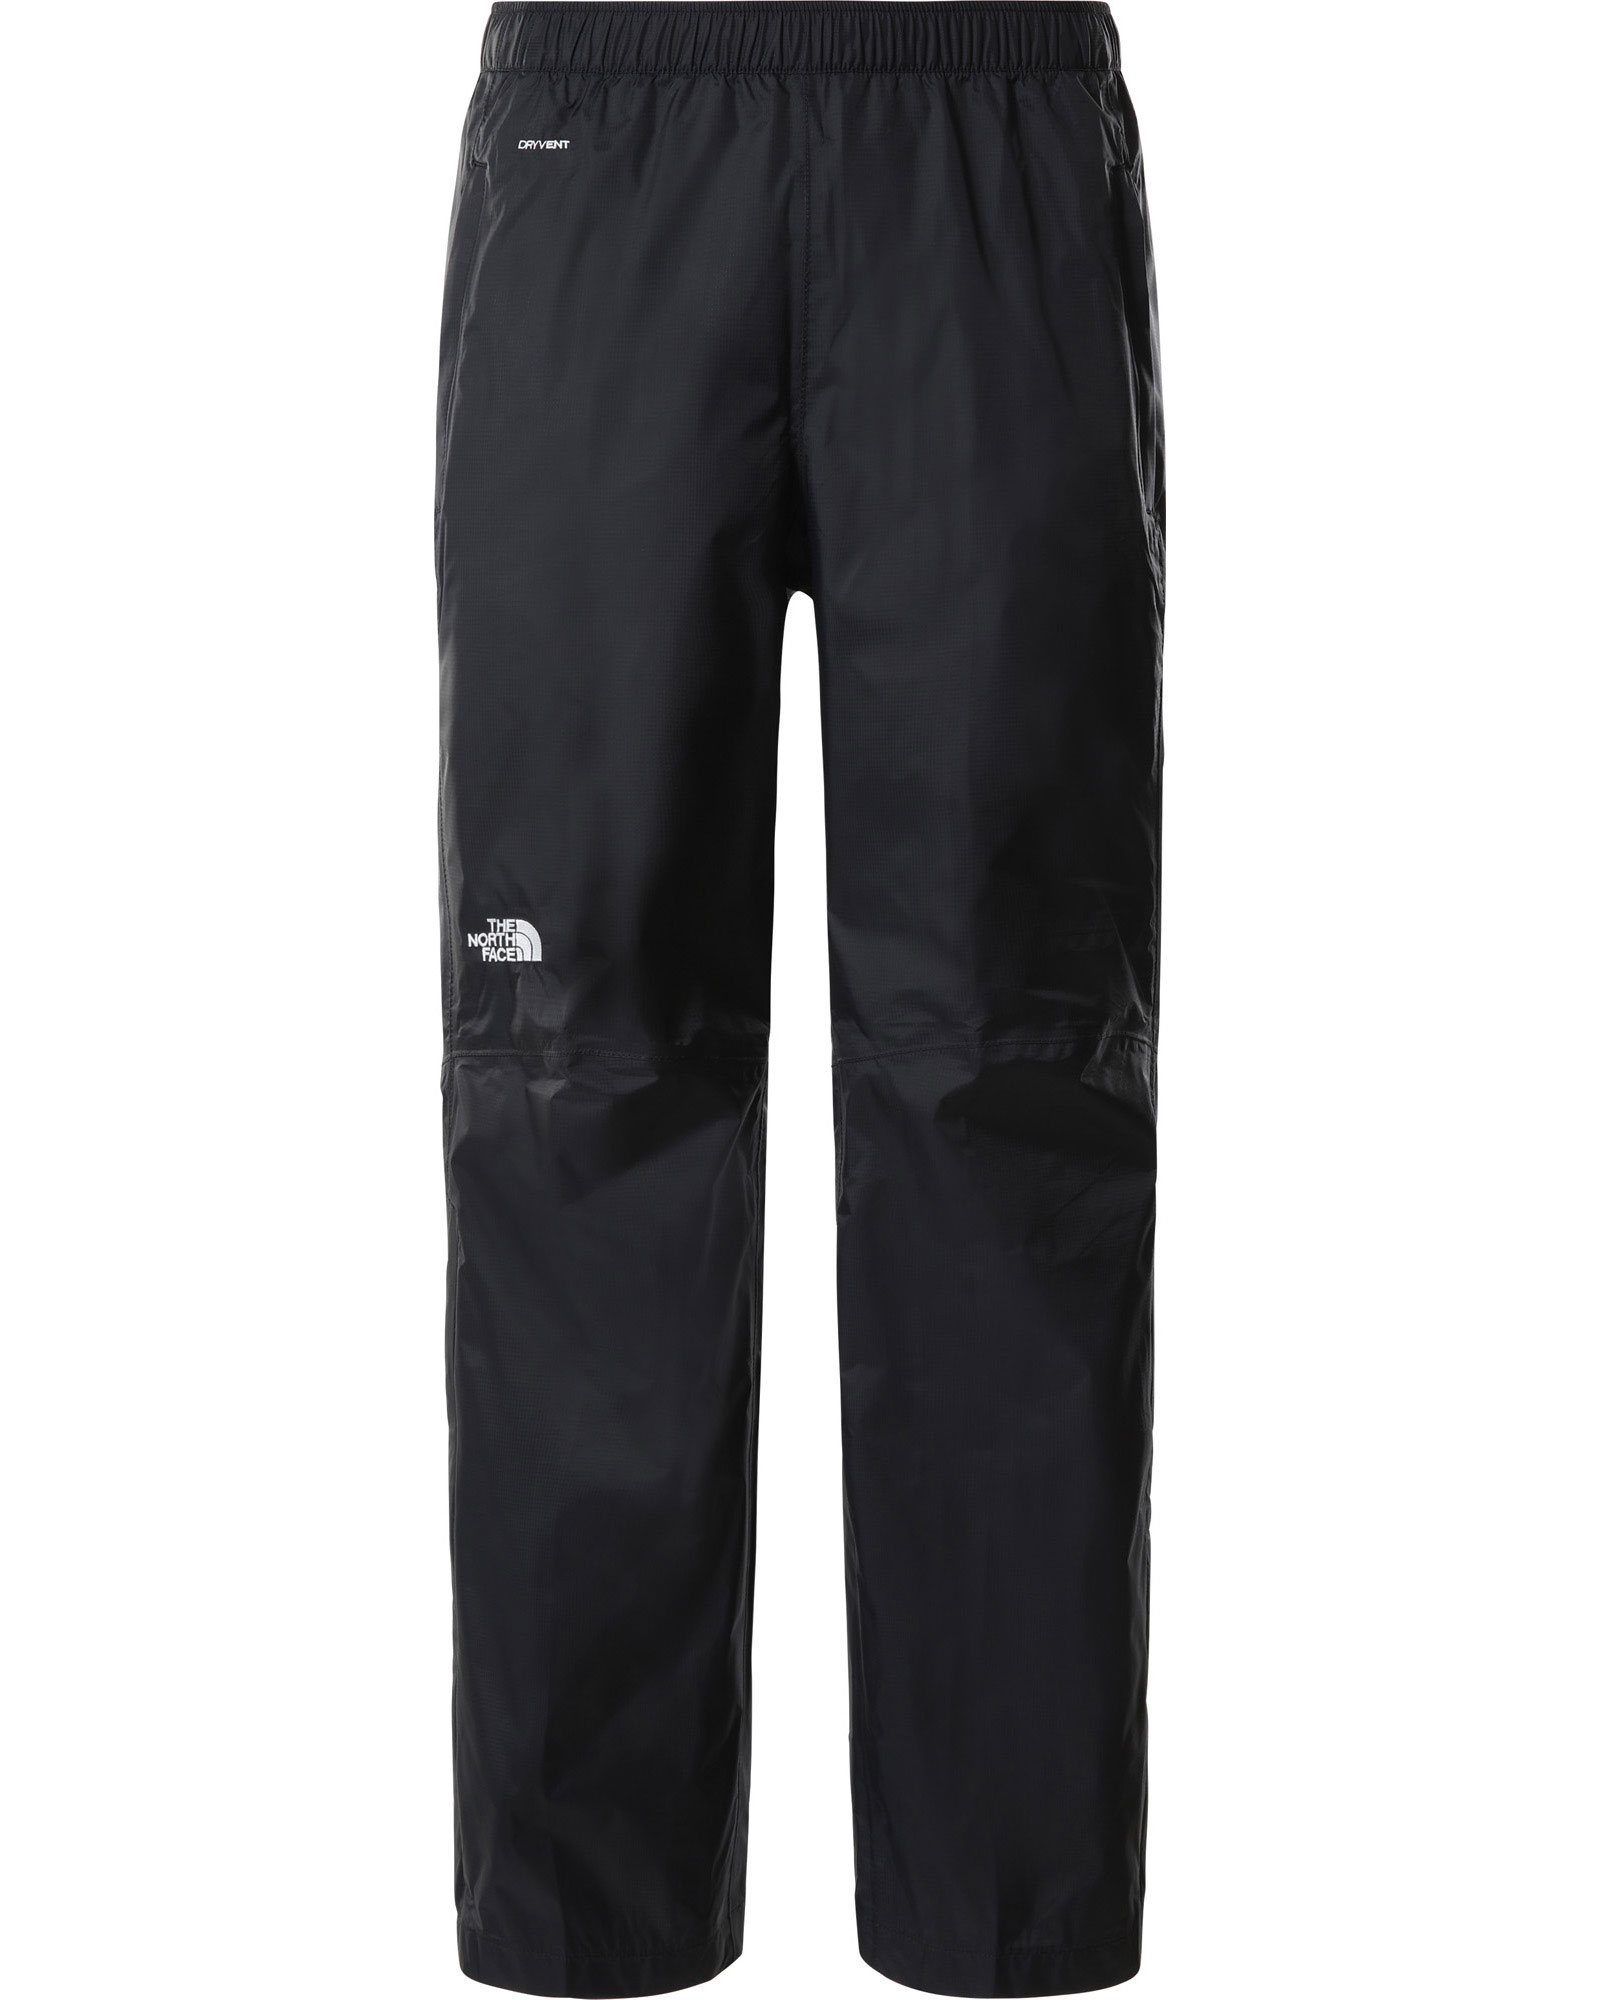 The North Face Venture 2 DryVent Men’s Half Zip Waterproof Pants - TNF Black S